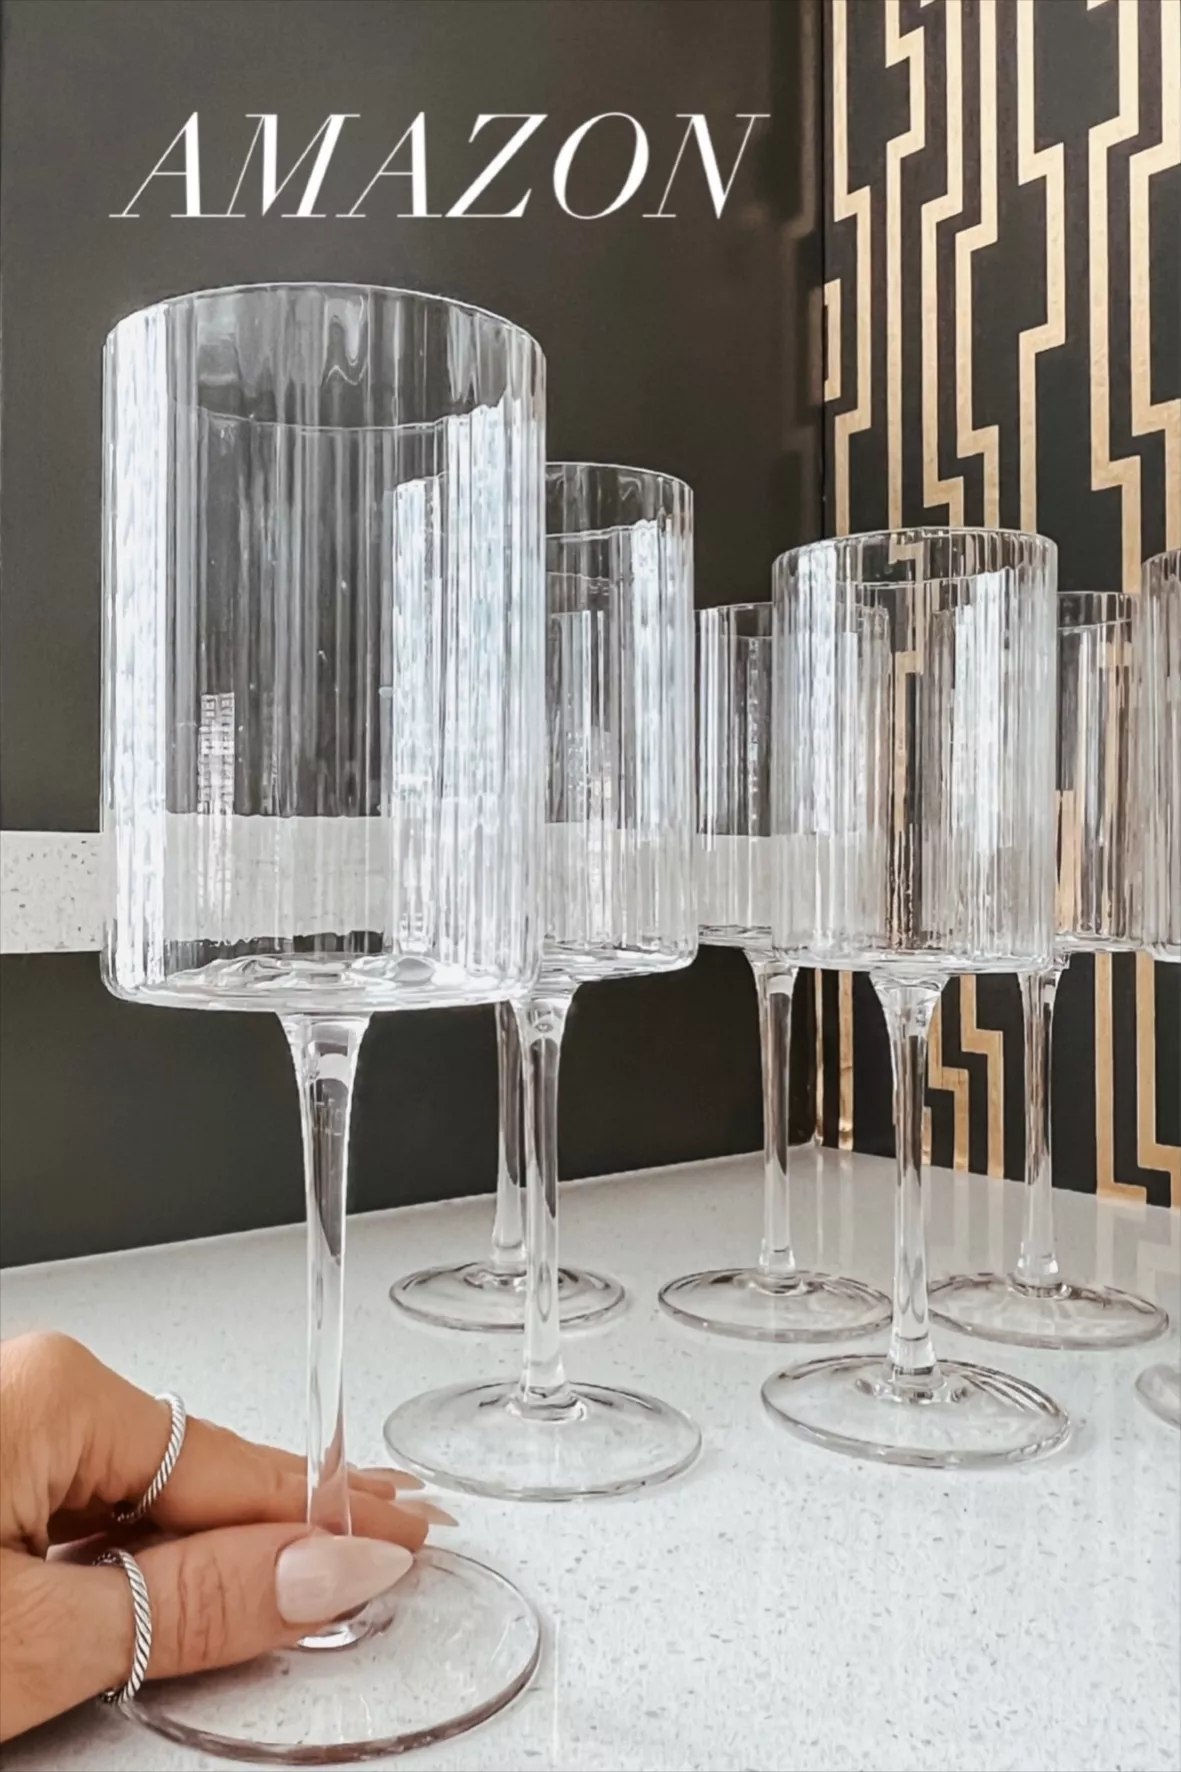 Joyjolt Elle Fluted Cylinder White Wine Glass - 11.5 Oz Long Stem